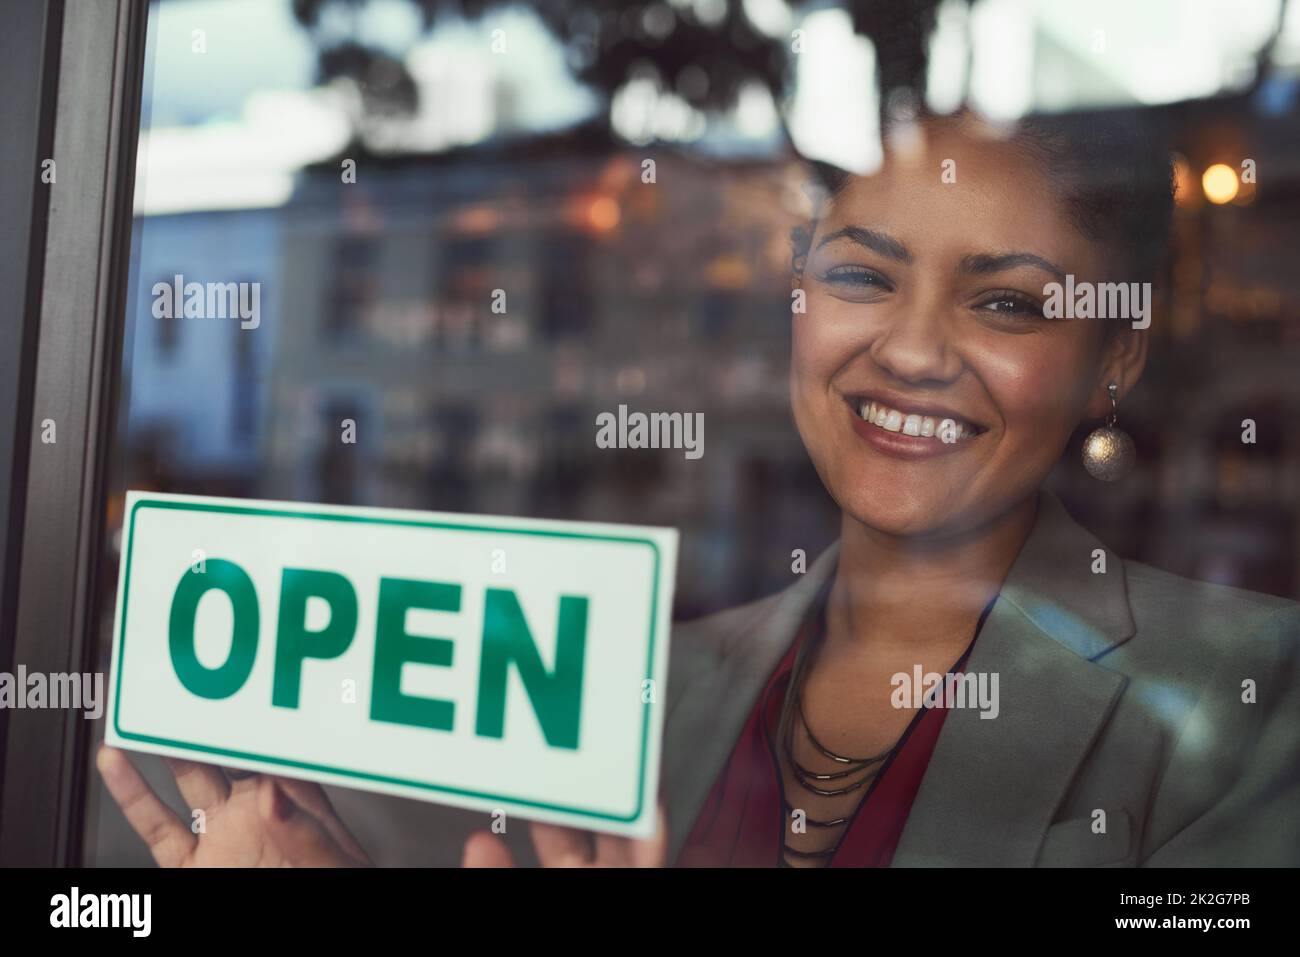 Sie freut sich darauf, alle ihre Kunden willkommen zu heißen. Porträt einer jungen Geschäftsbesitzerin, die ein offenes Schild am Fenster ihres Cafés aufgehängt hat. Stockfoto